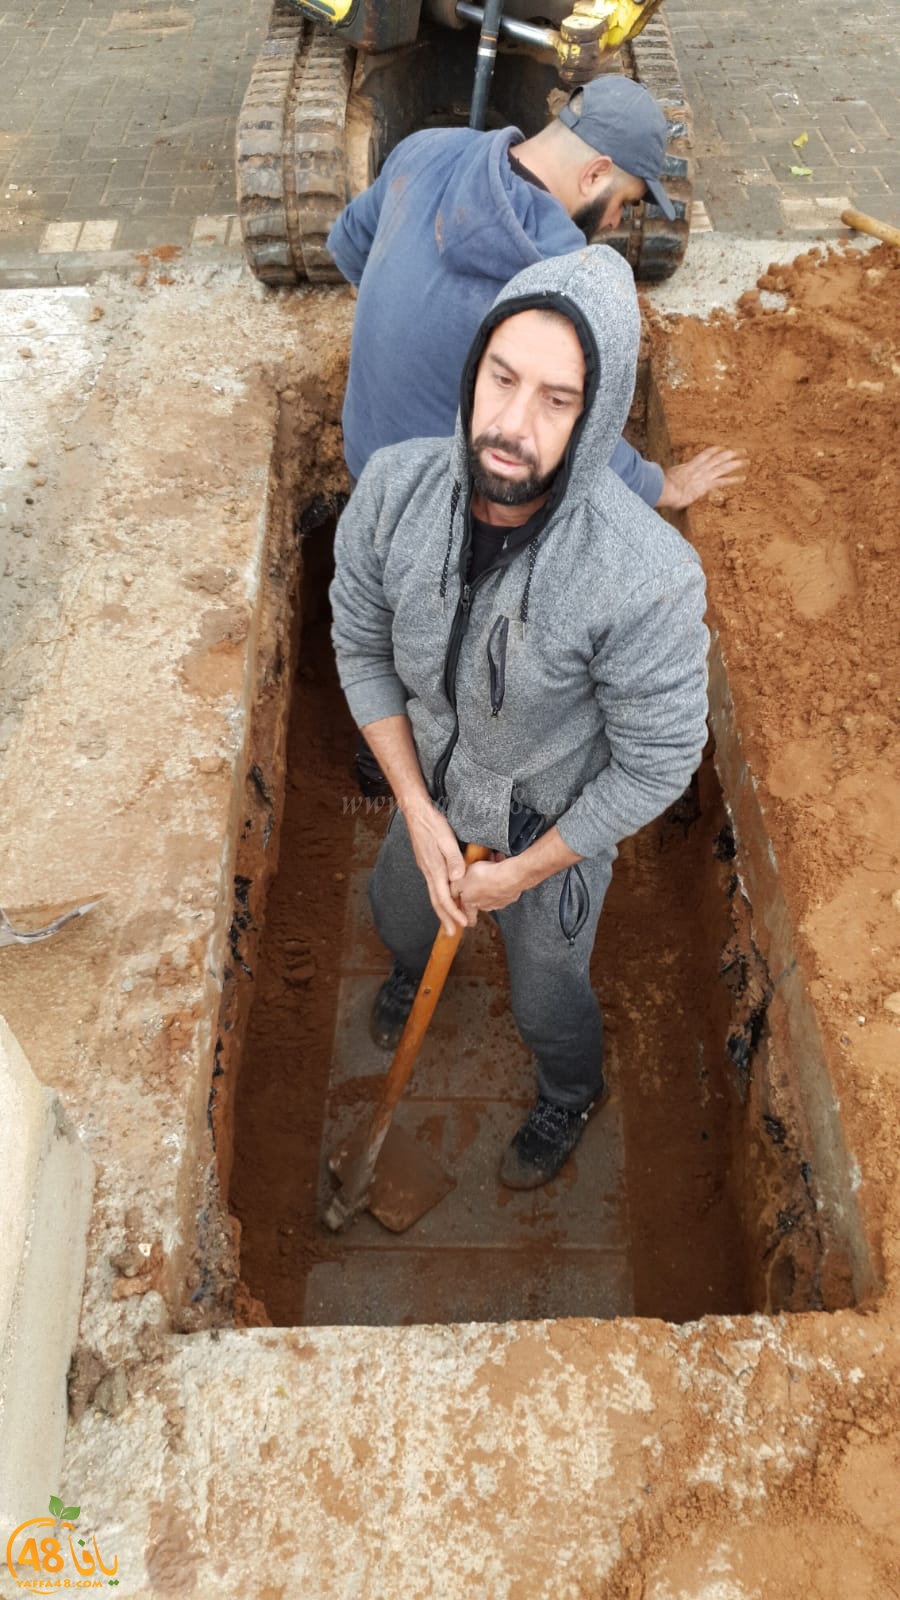  بالفيديو: لجنة اكرام الميت تبدأ بدفن الموتى في المسطحات بمقبرة طاسو